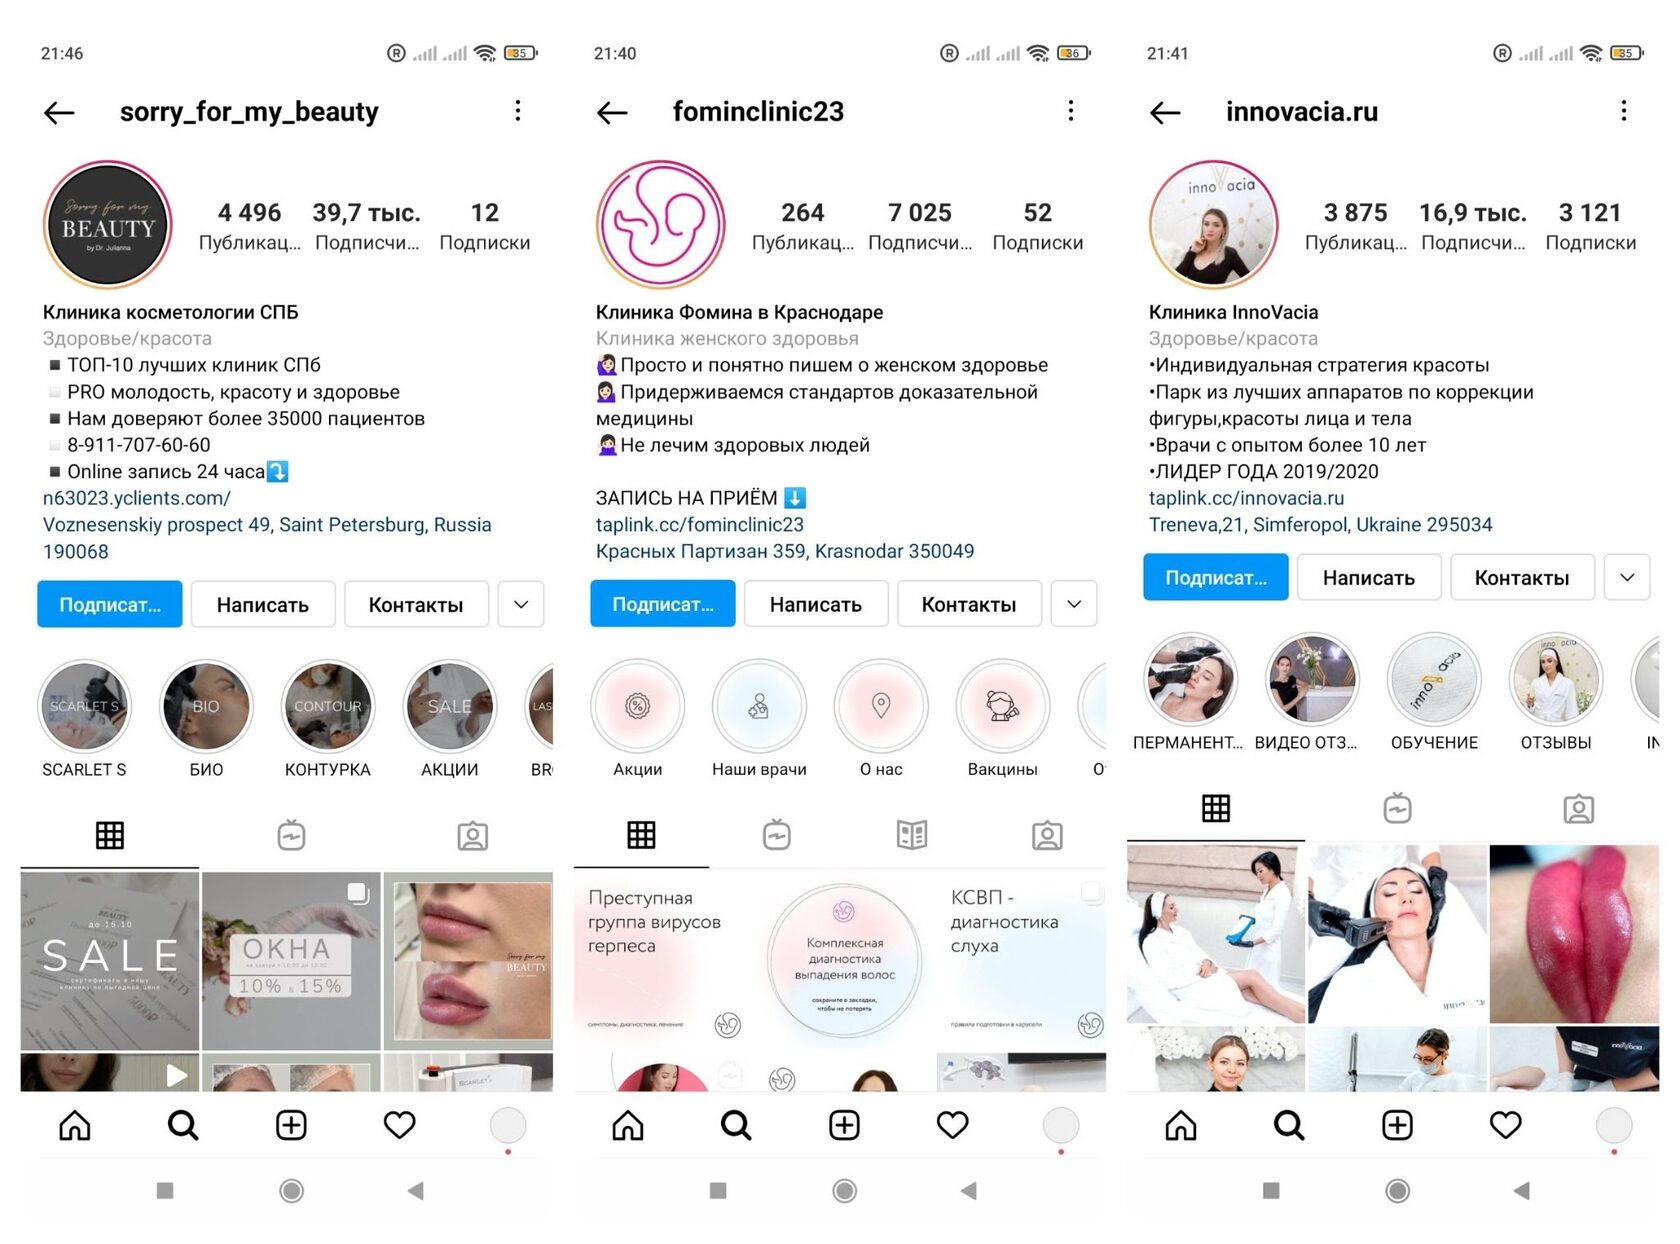 Как добавить новое фото профиля в Instagram или изменить текущее? | Справочный центр Instagram